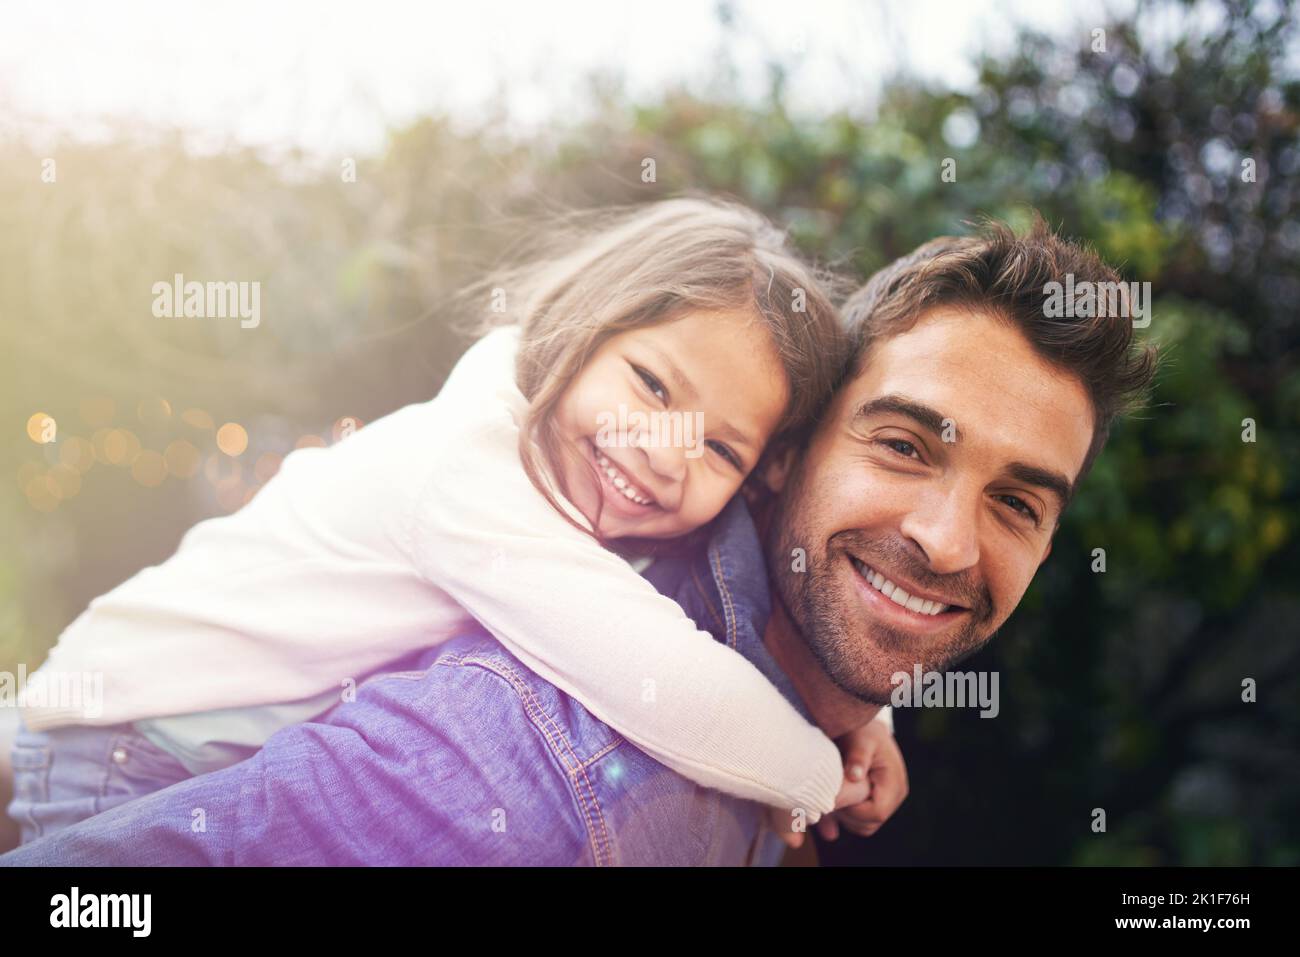 Mein kleines Mädchen ist meine Welt. Ein kleines Mädchen und ihr Vater spielen draußen zusammen. Stockfoto